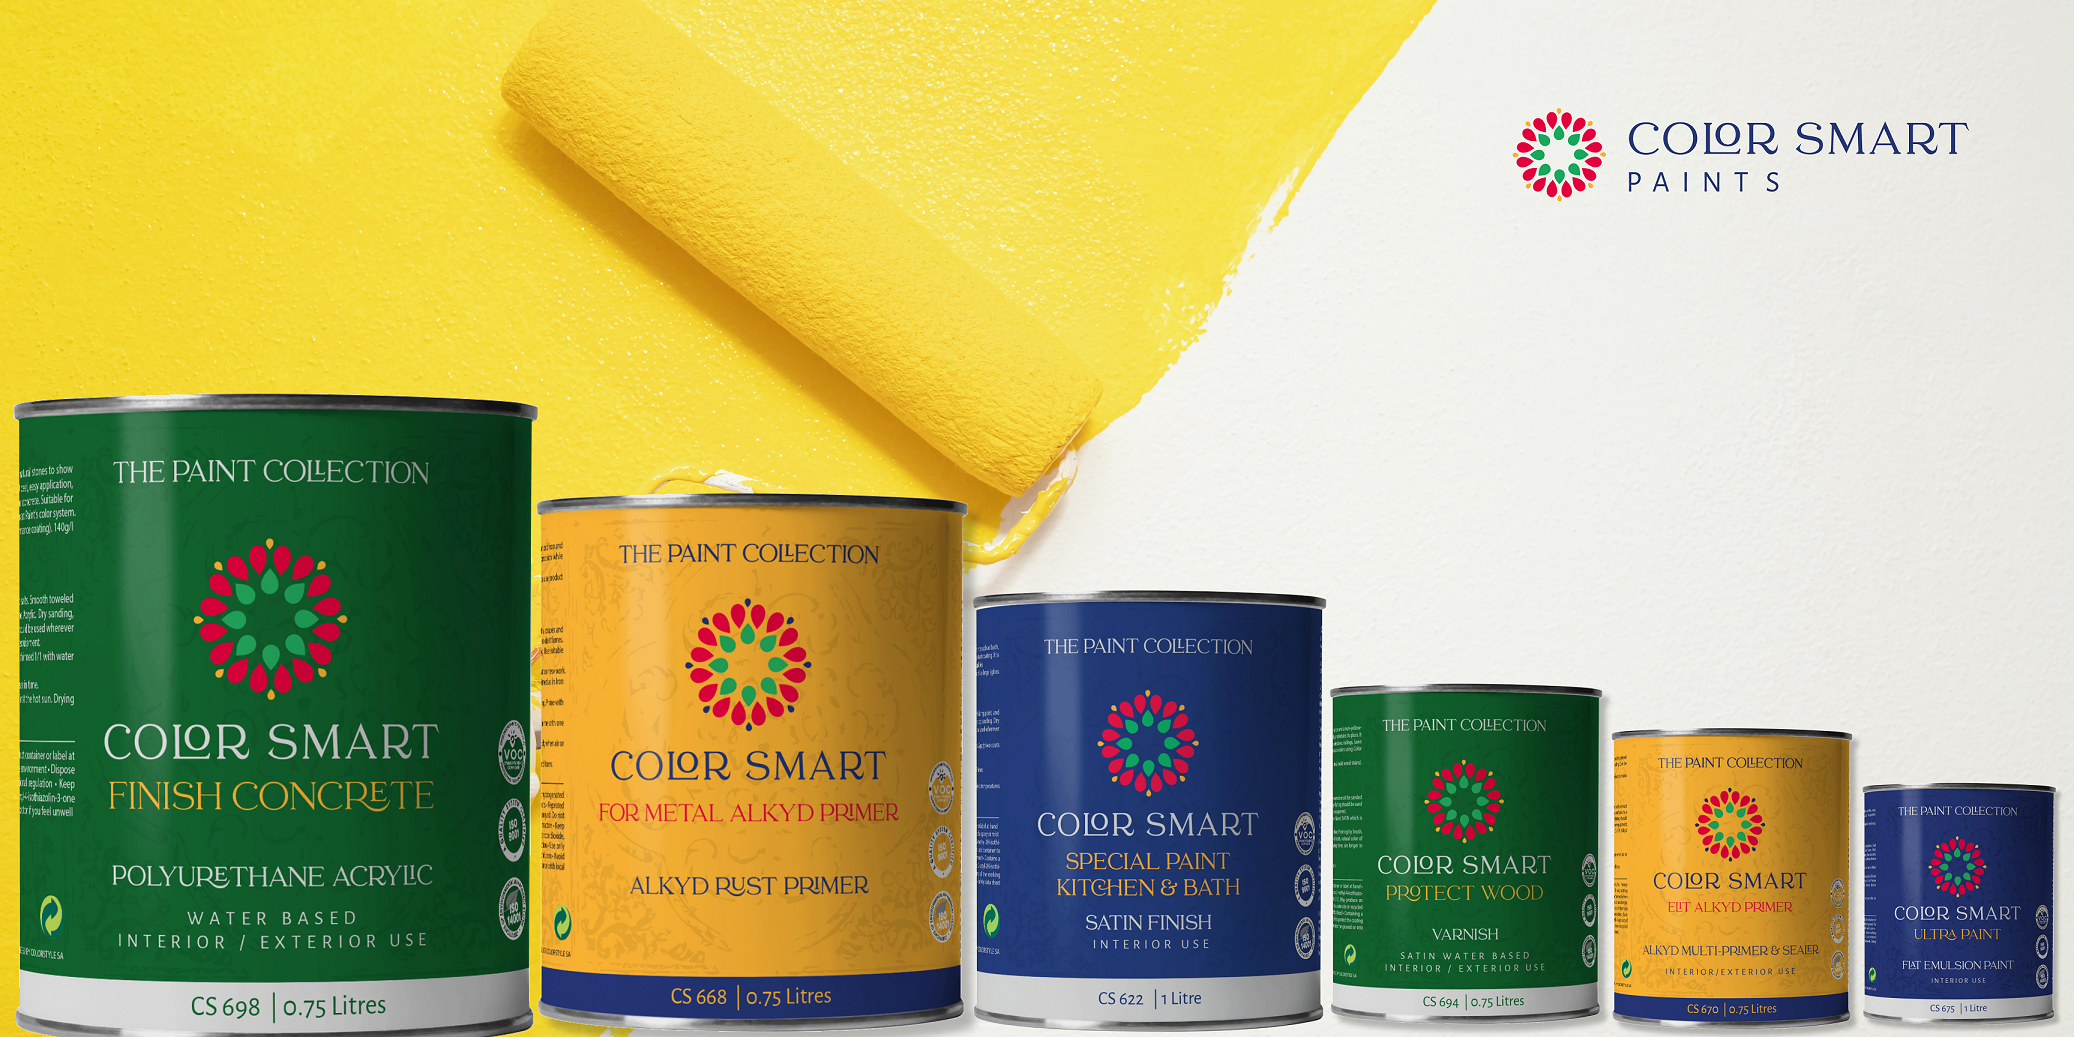 Color Smart, investiții de peste 800.000 de euro în propriul brand de vopsea premium